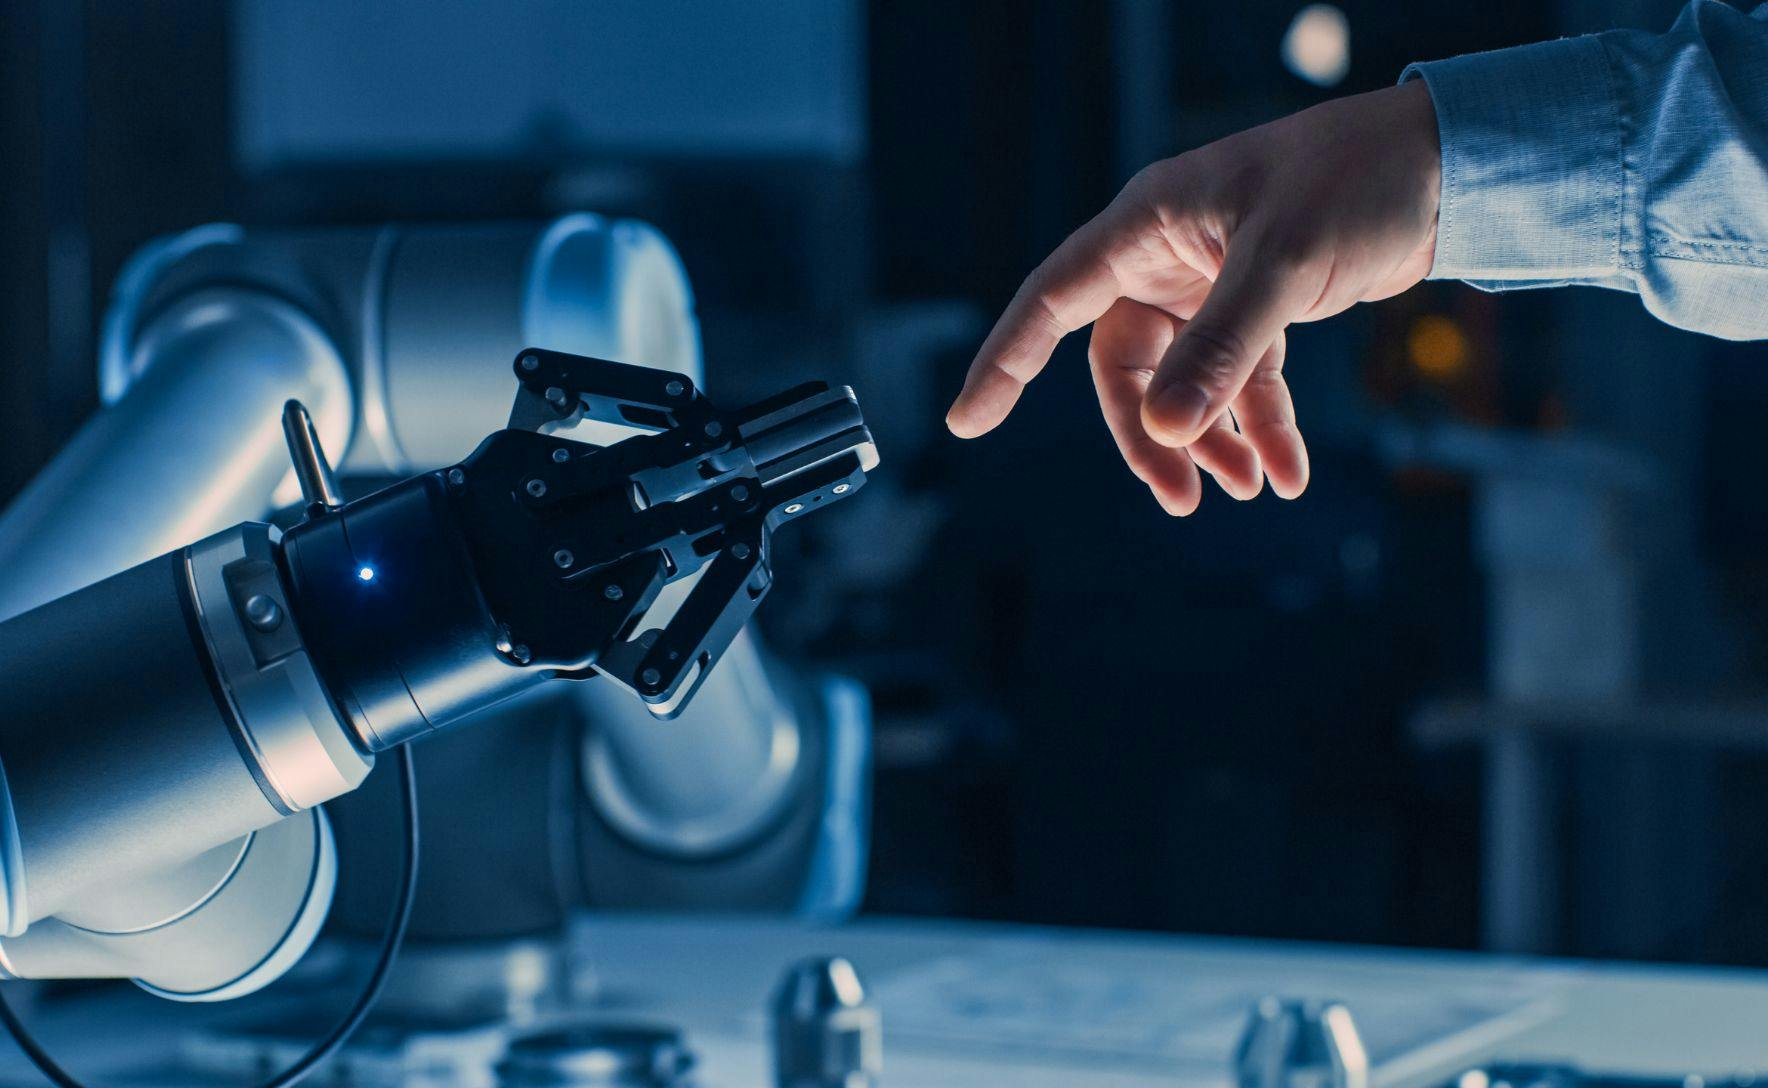 Human hand touching a robot hand